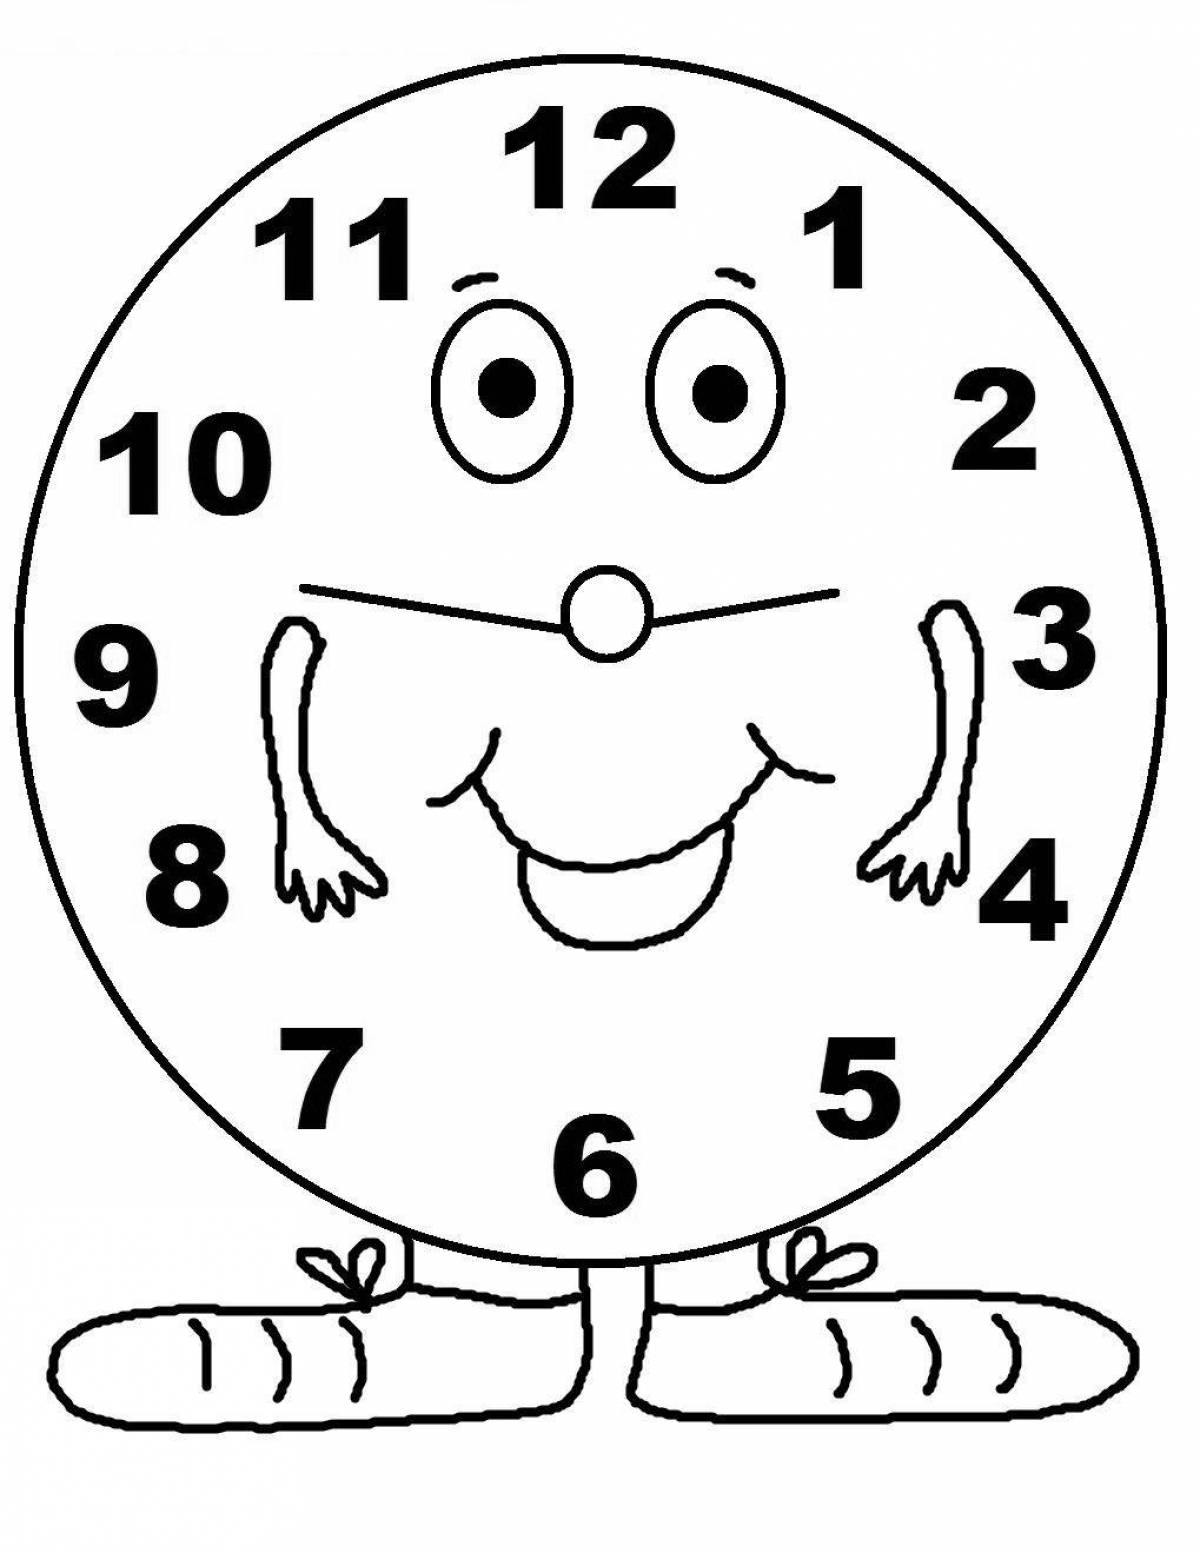 Раскраски часов для детей. Часы раскраска. Часы раскраска для детей. Часы картинка для детей раскраска. Часы для детей разрисовки.